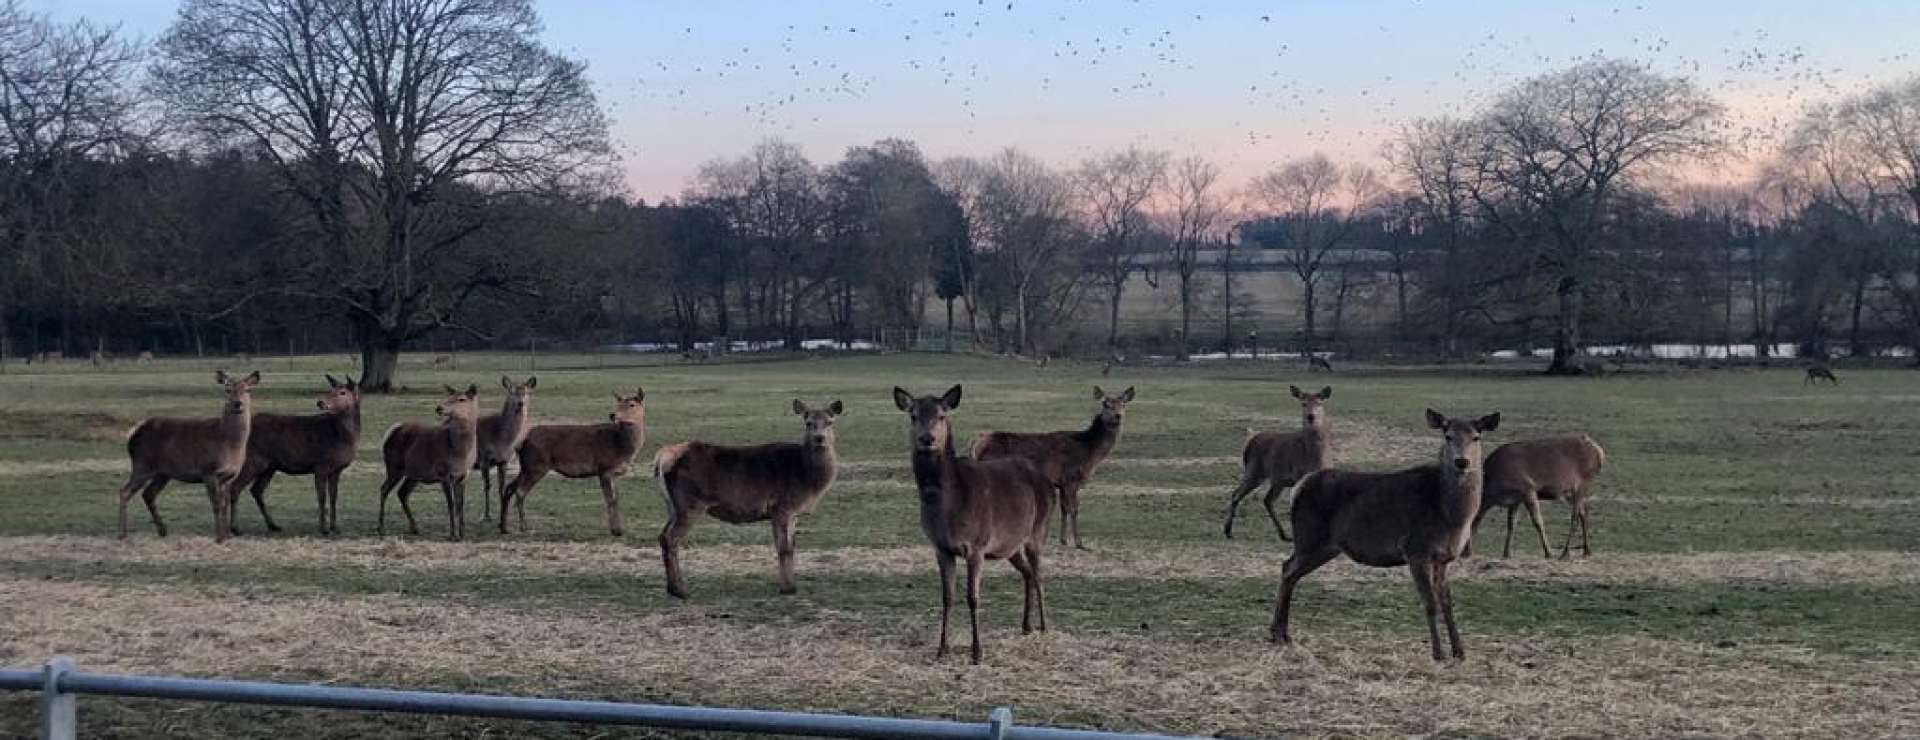 Deer in feb 23